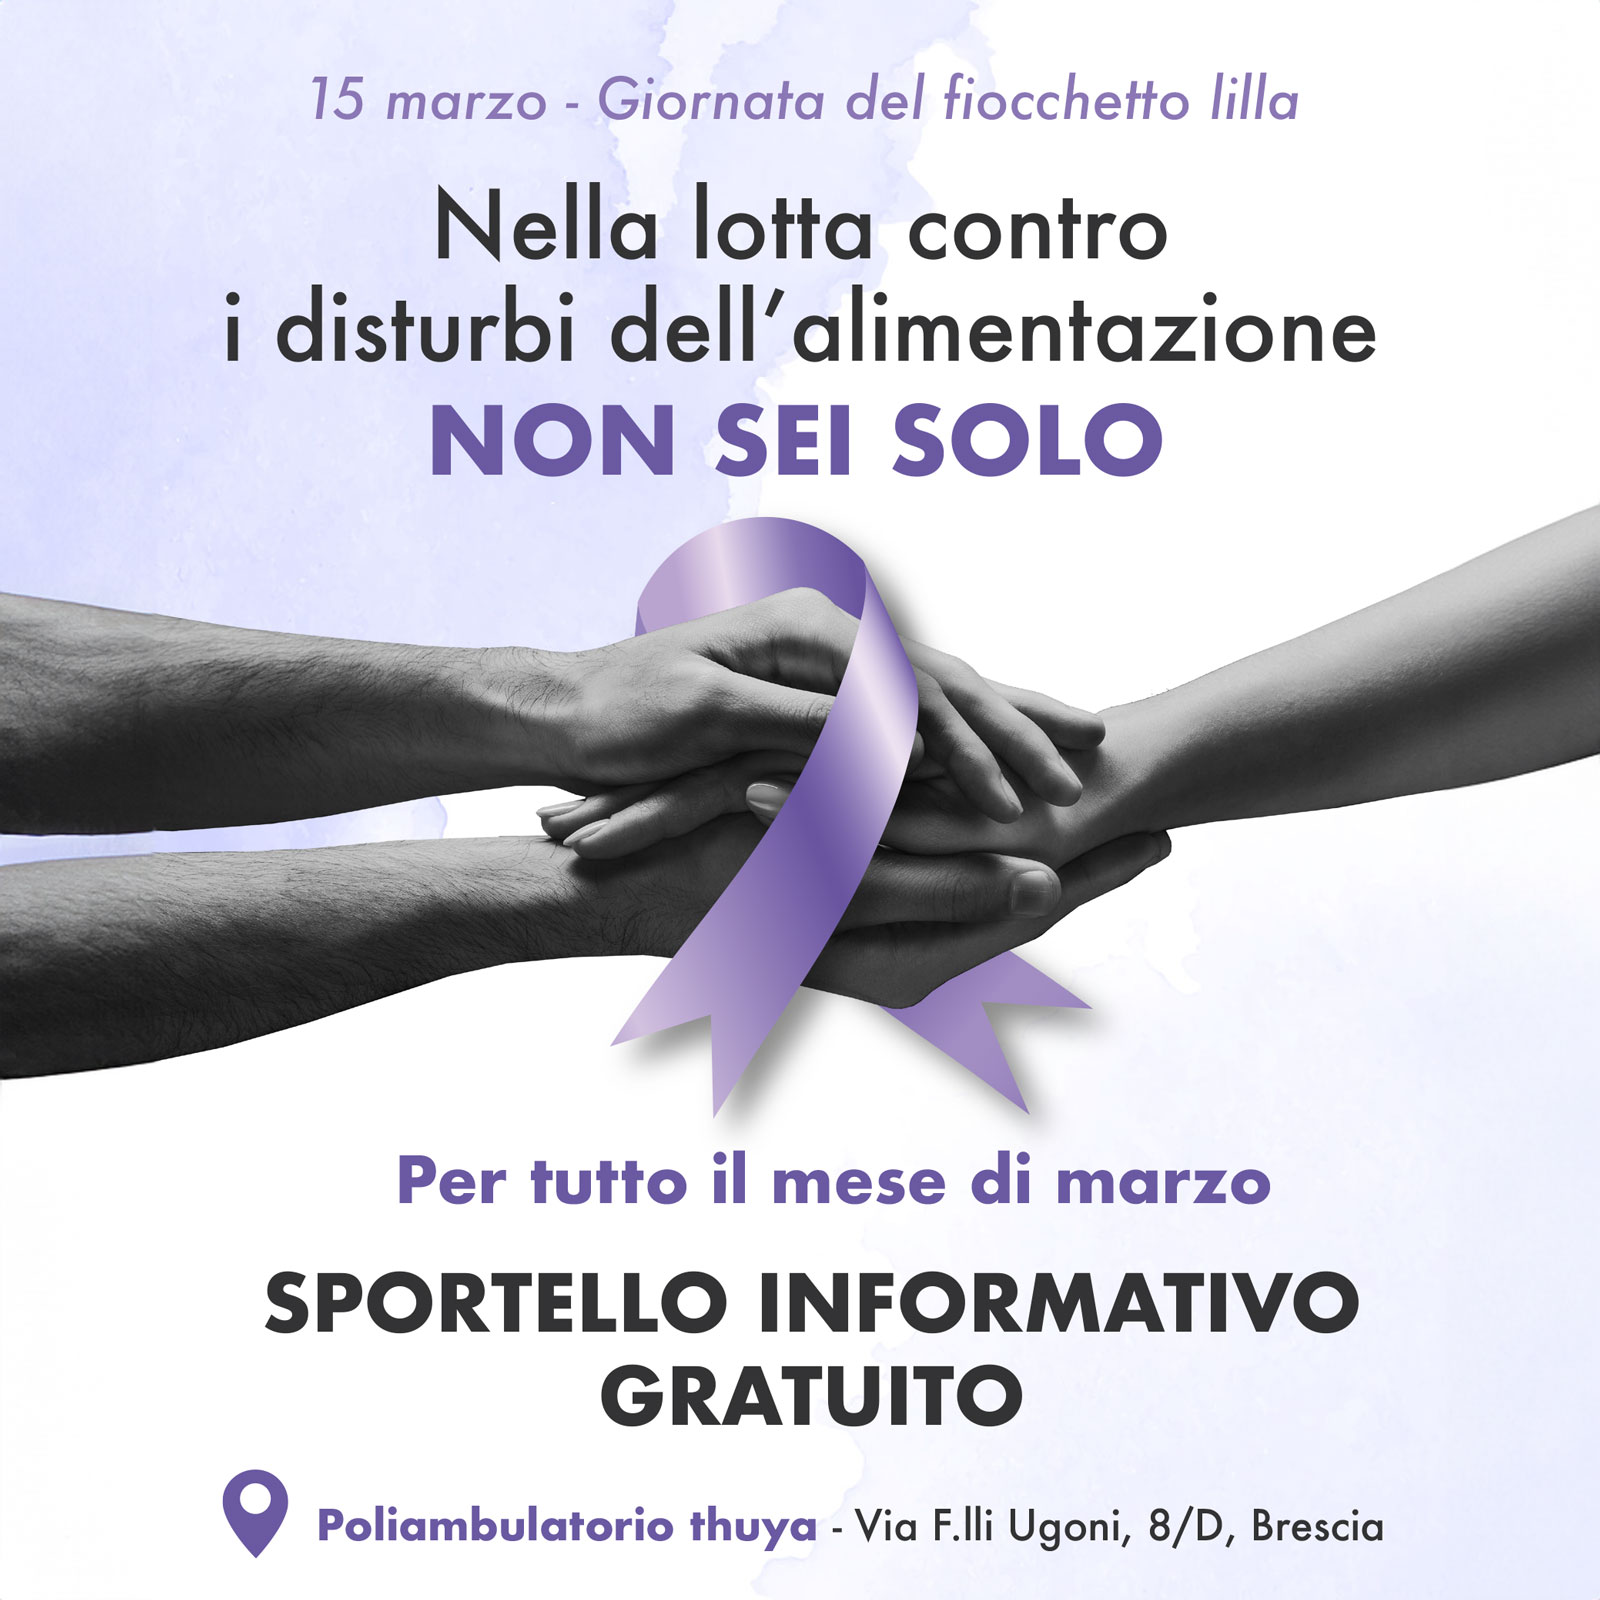 AIDAP-Brescia-sportello-marzo-24 Sportello informativo gratuito sui disturbi dell'alimentazione